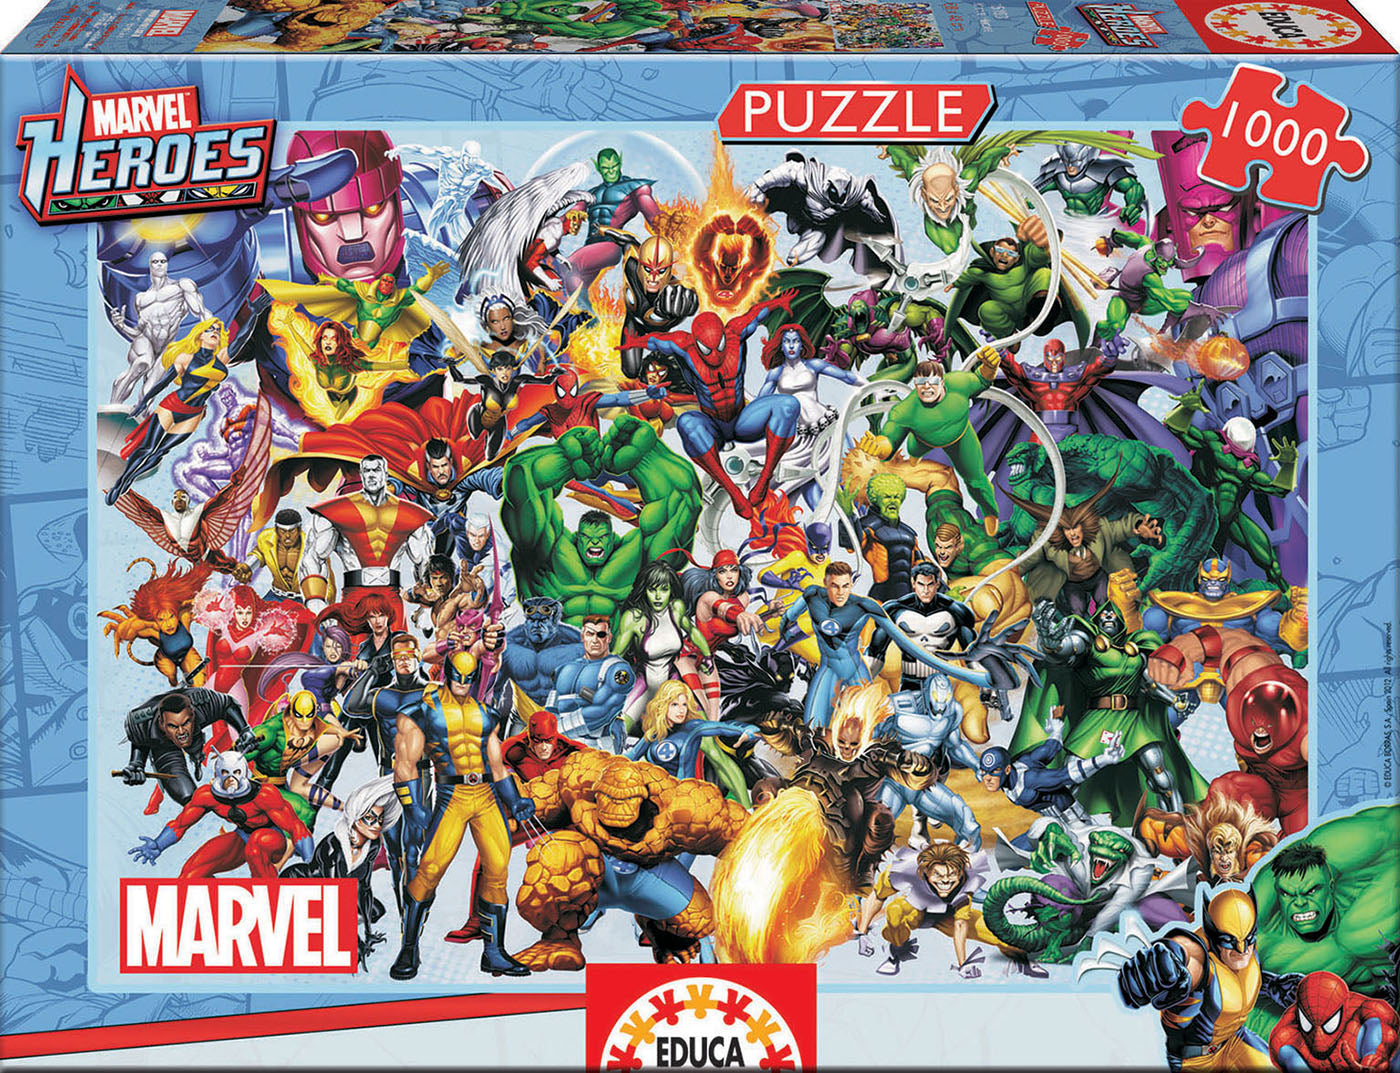 Marvel Heroes af Marvel, 1000 brikker puslespil